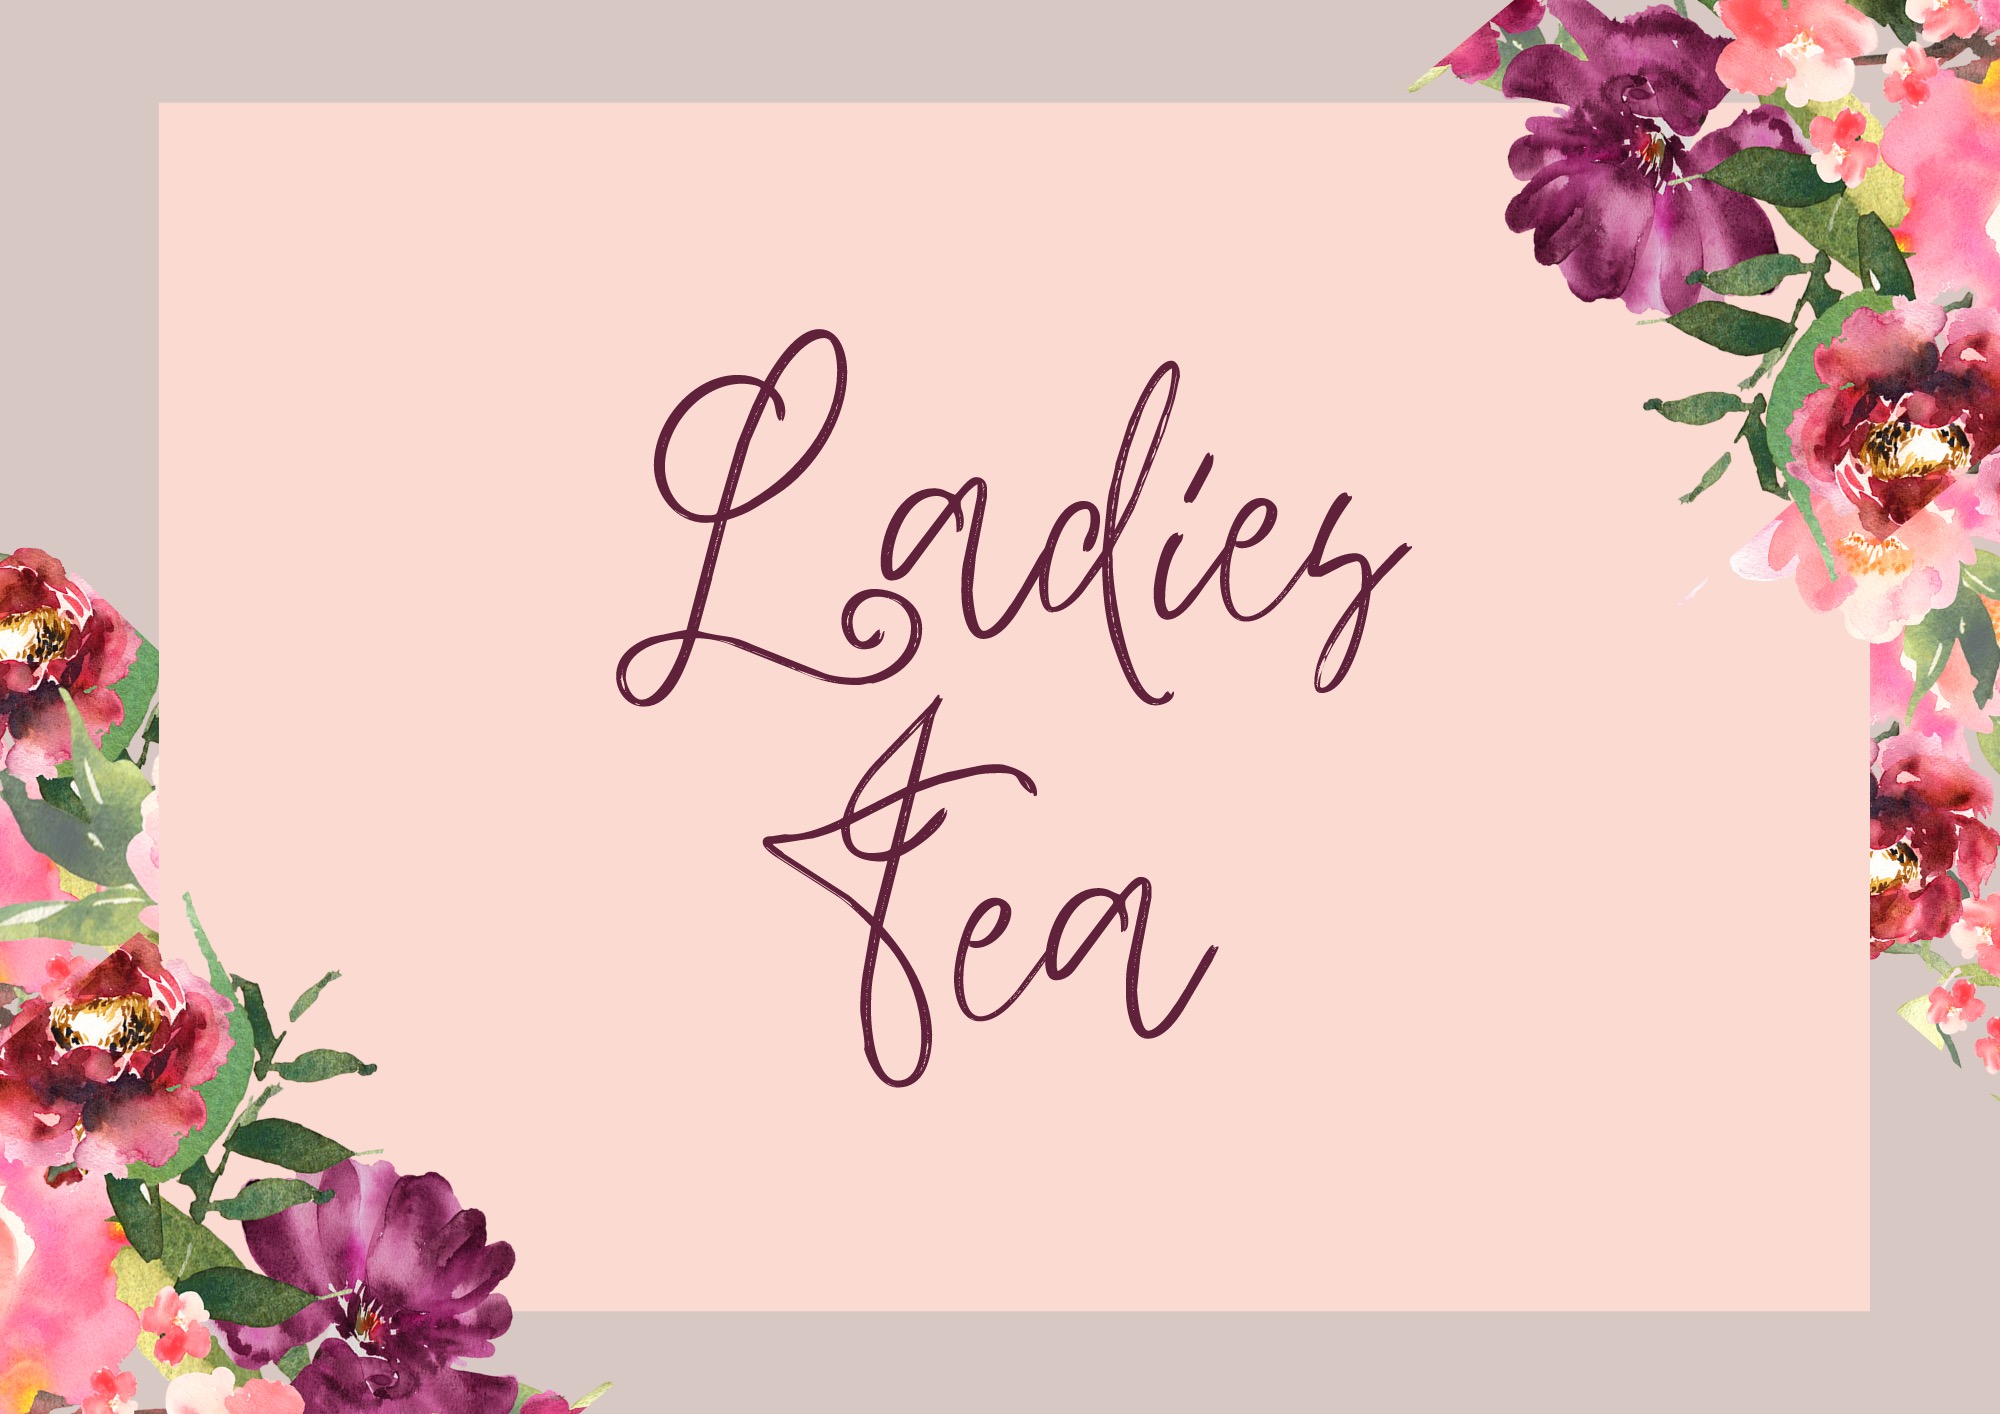 Ladies Tea image